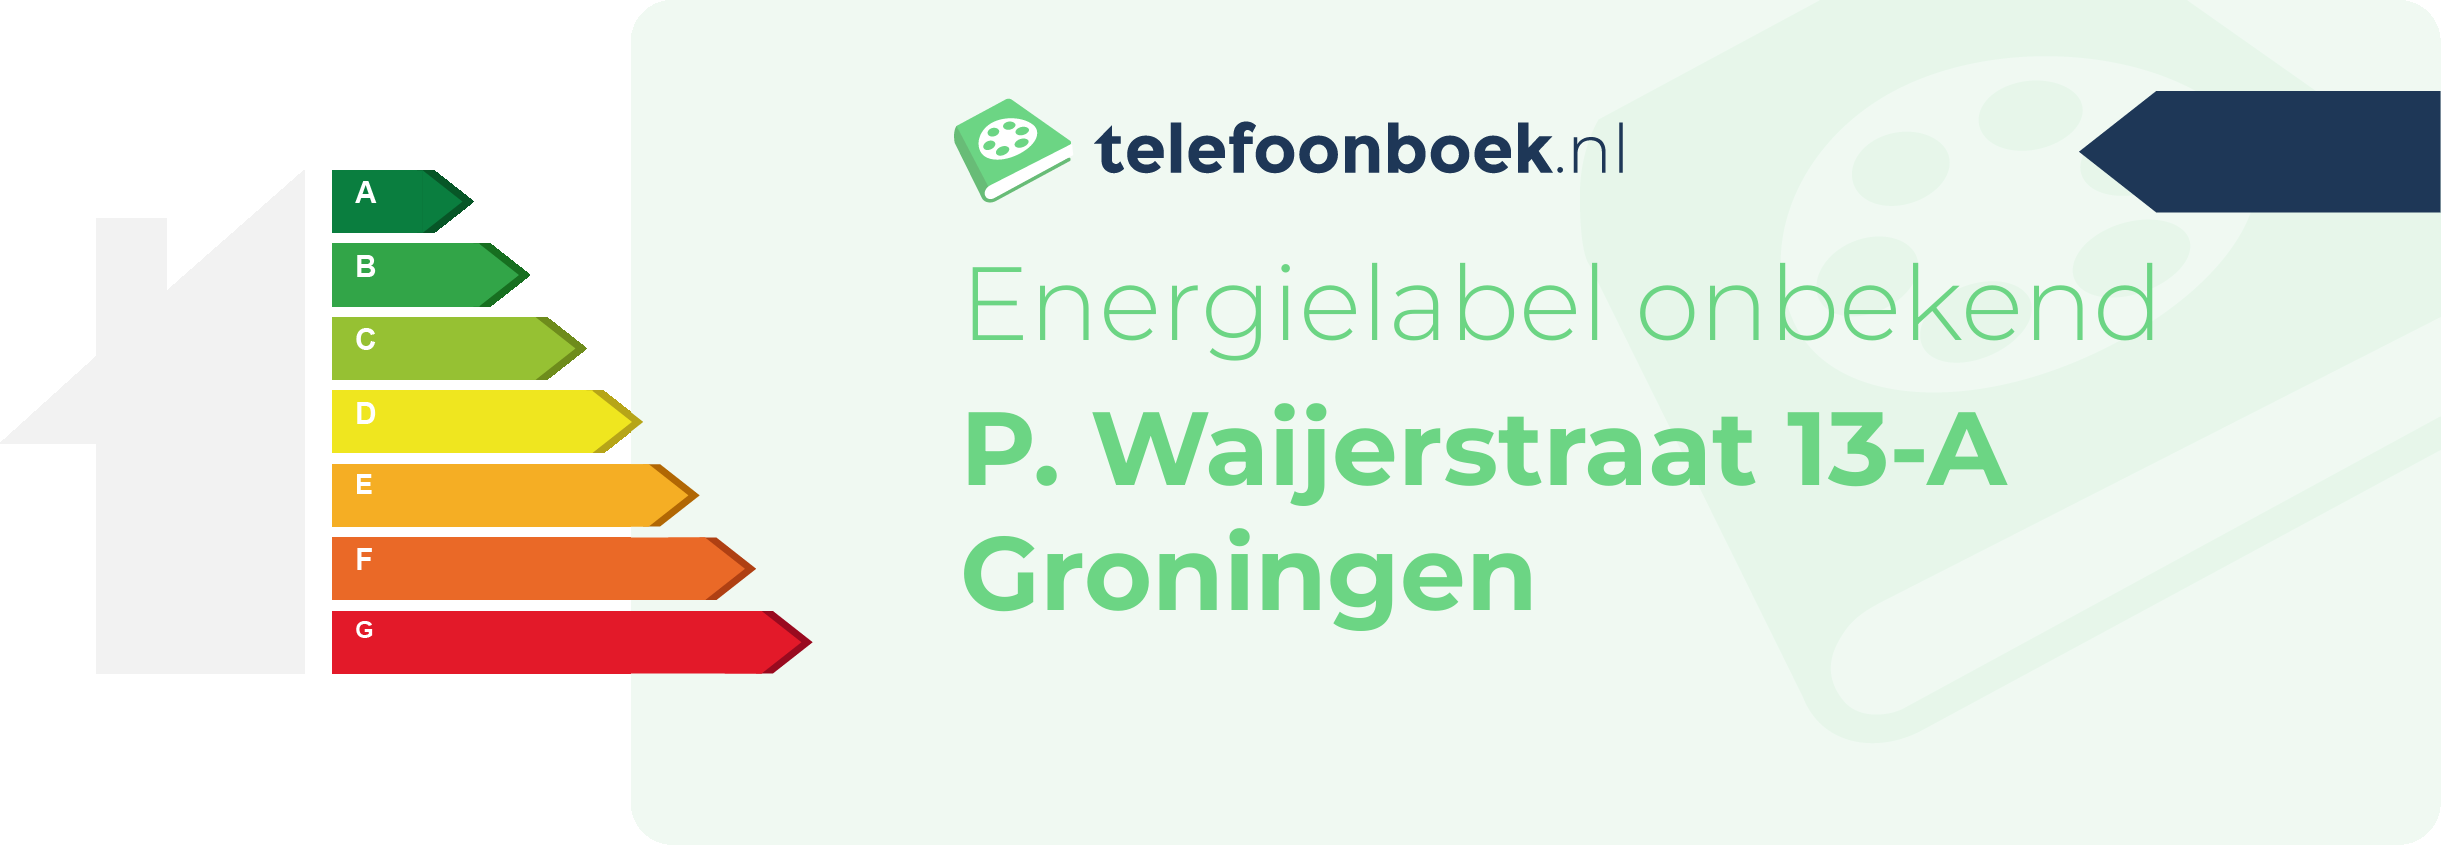 Energielabel P. Waijerstraat 13-A Groningen